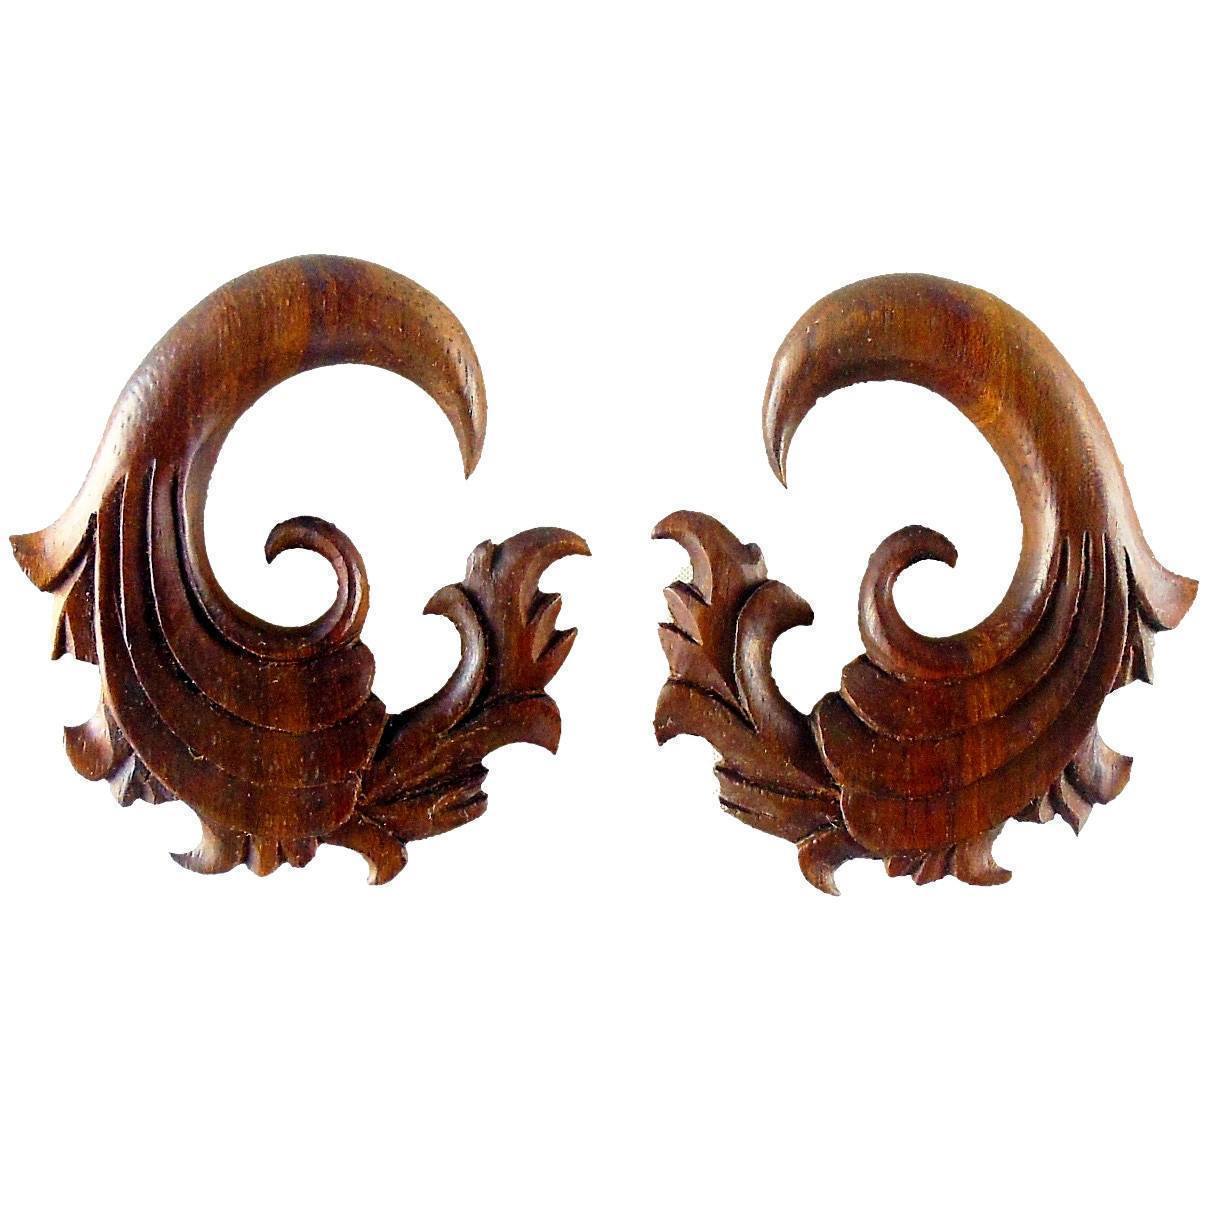 Gauges :|: Fire. 00 Gauge Rosewood Earrings. 1 3/4 inch W X 2 inch L | Wood Body Jewelry